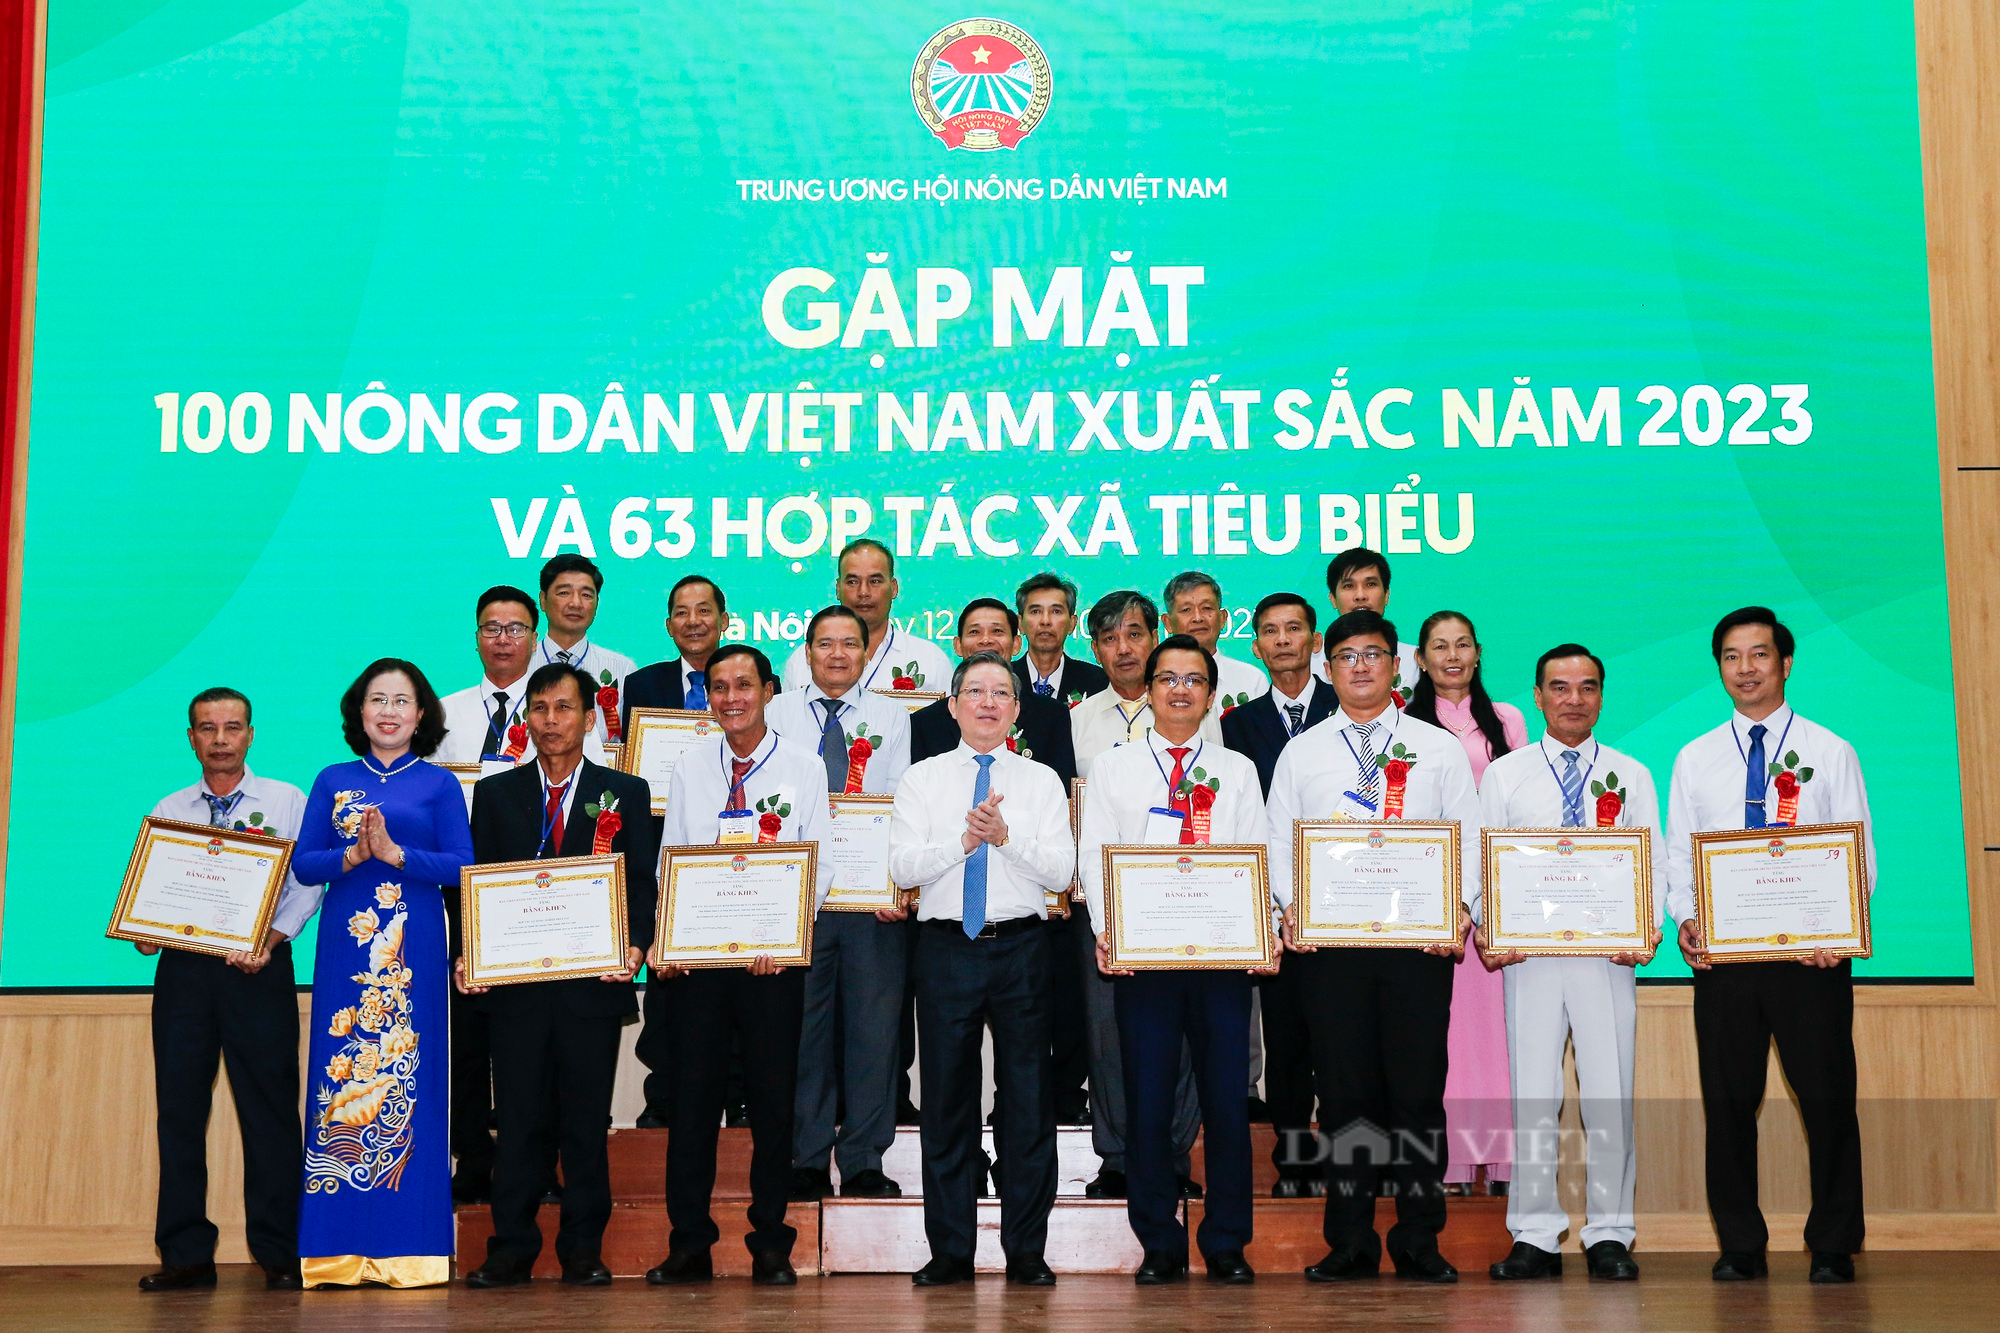 Hình ảnh 163 NDVNXS và HTX tiêu biểu 2023 nhận bằng khen từ Trung ương Hội nông dân Việt Nam - Ảnh 1.